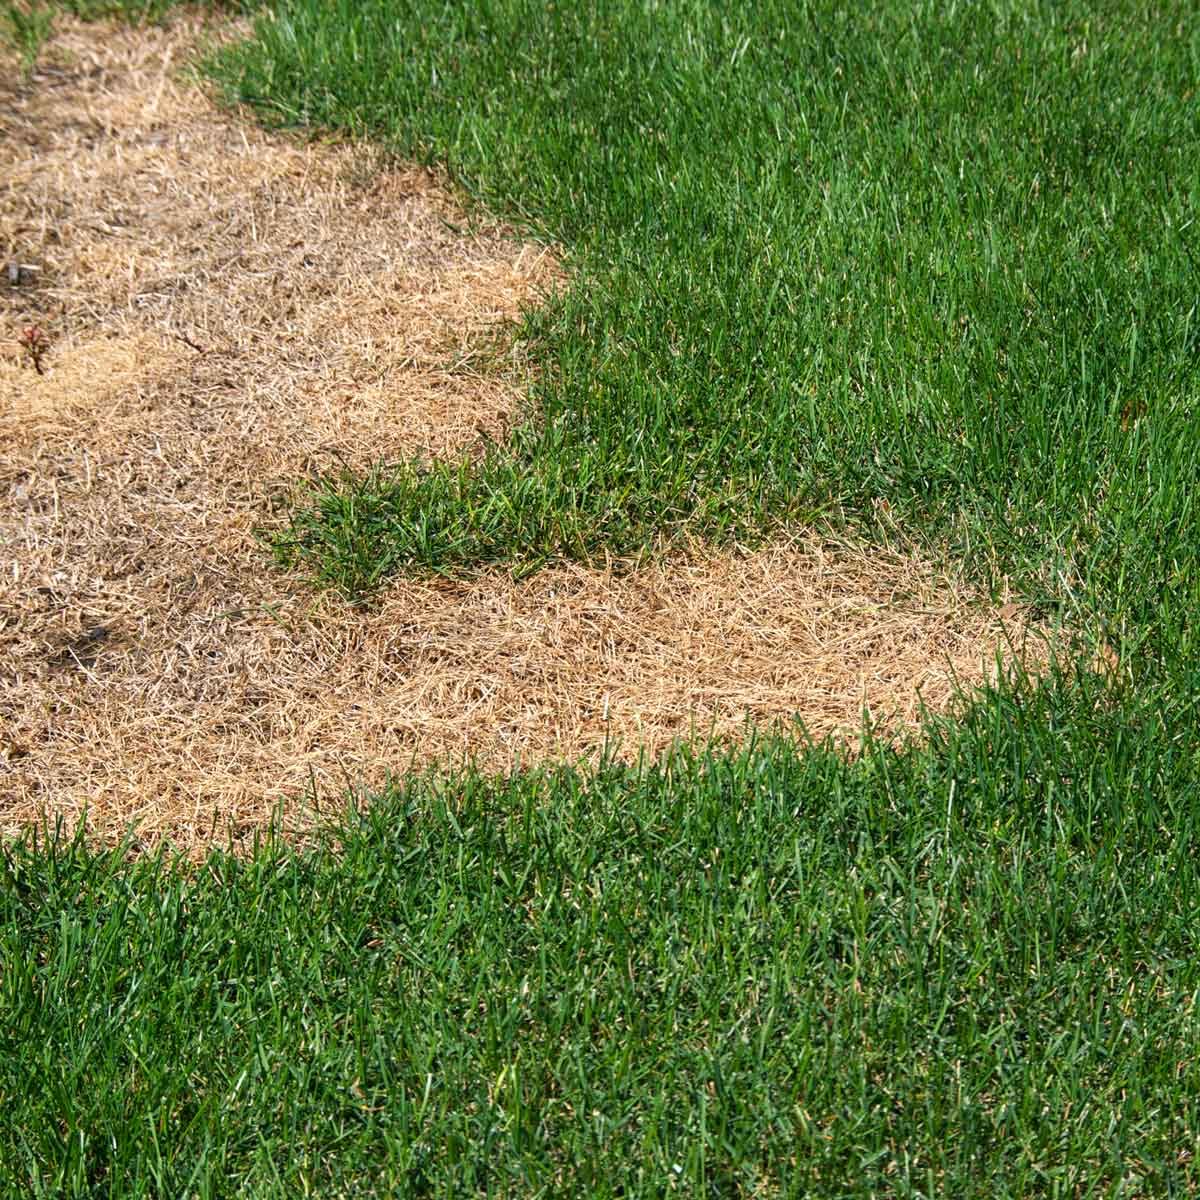 How Do I Repair Dry Grass?